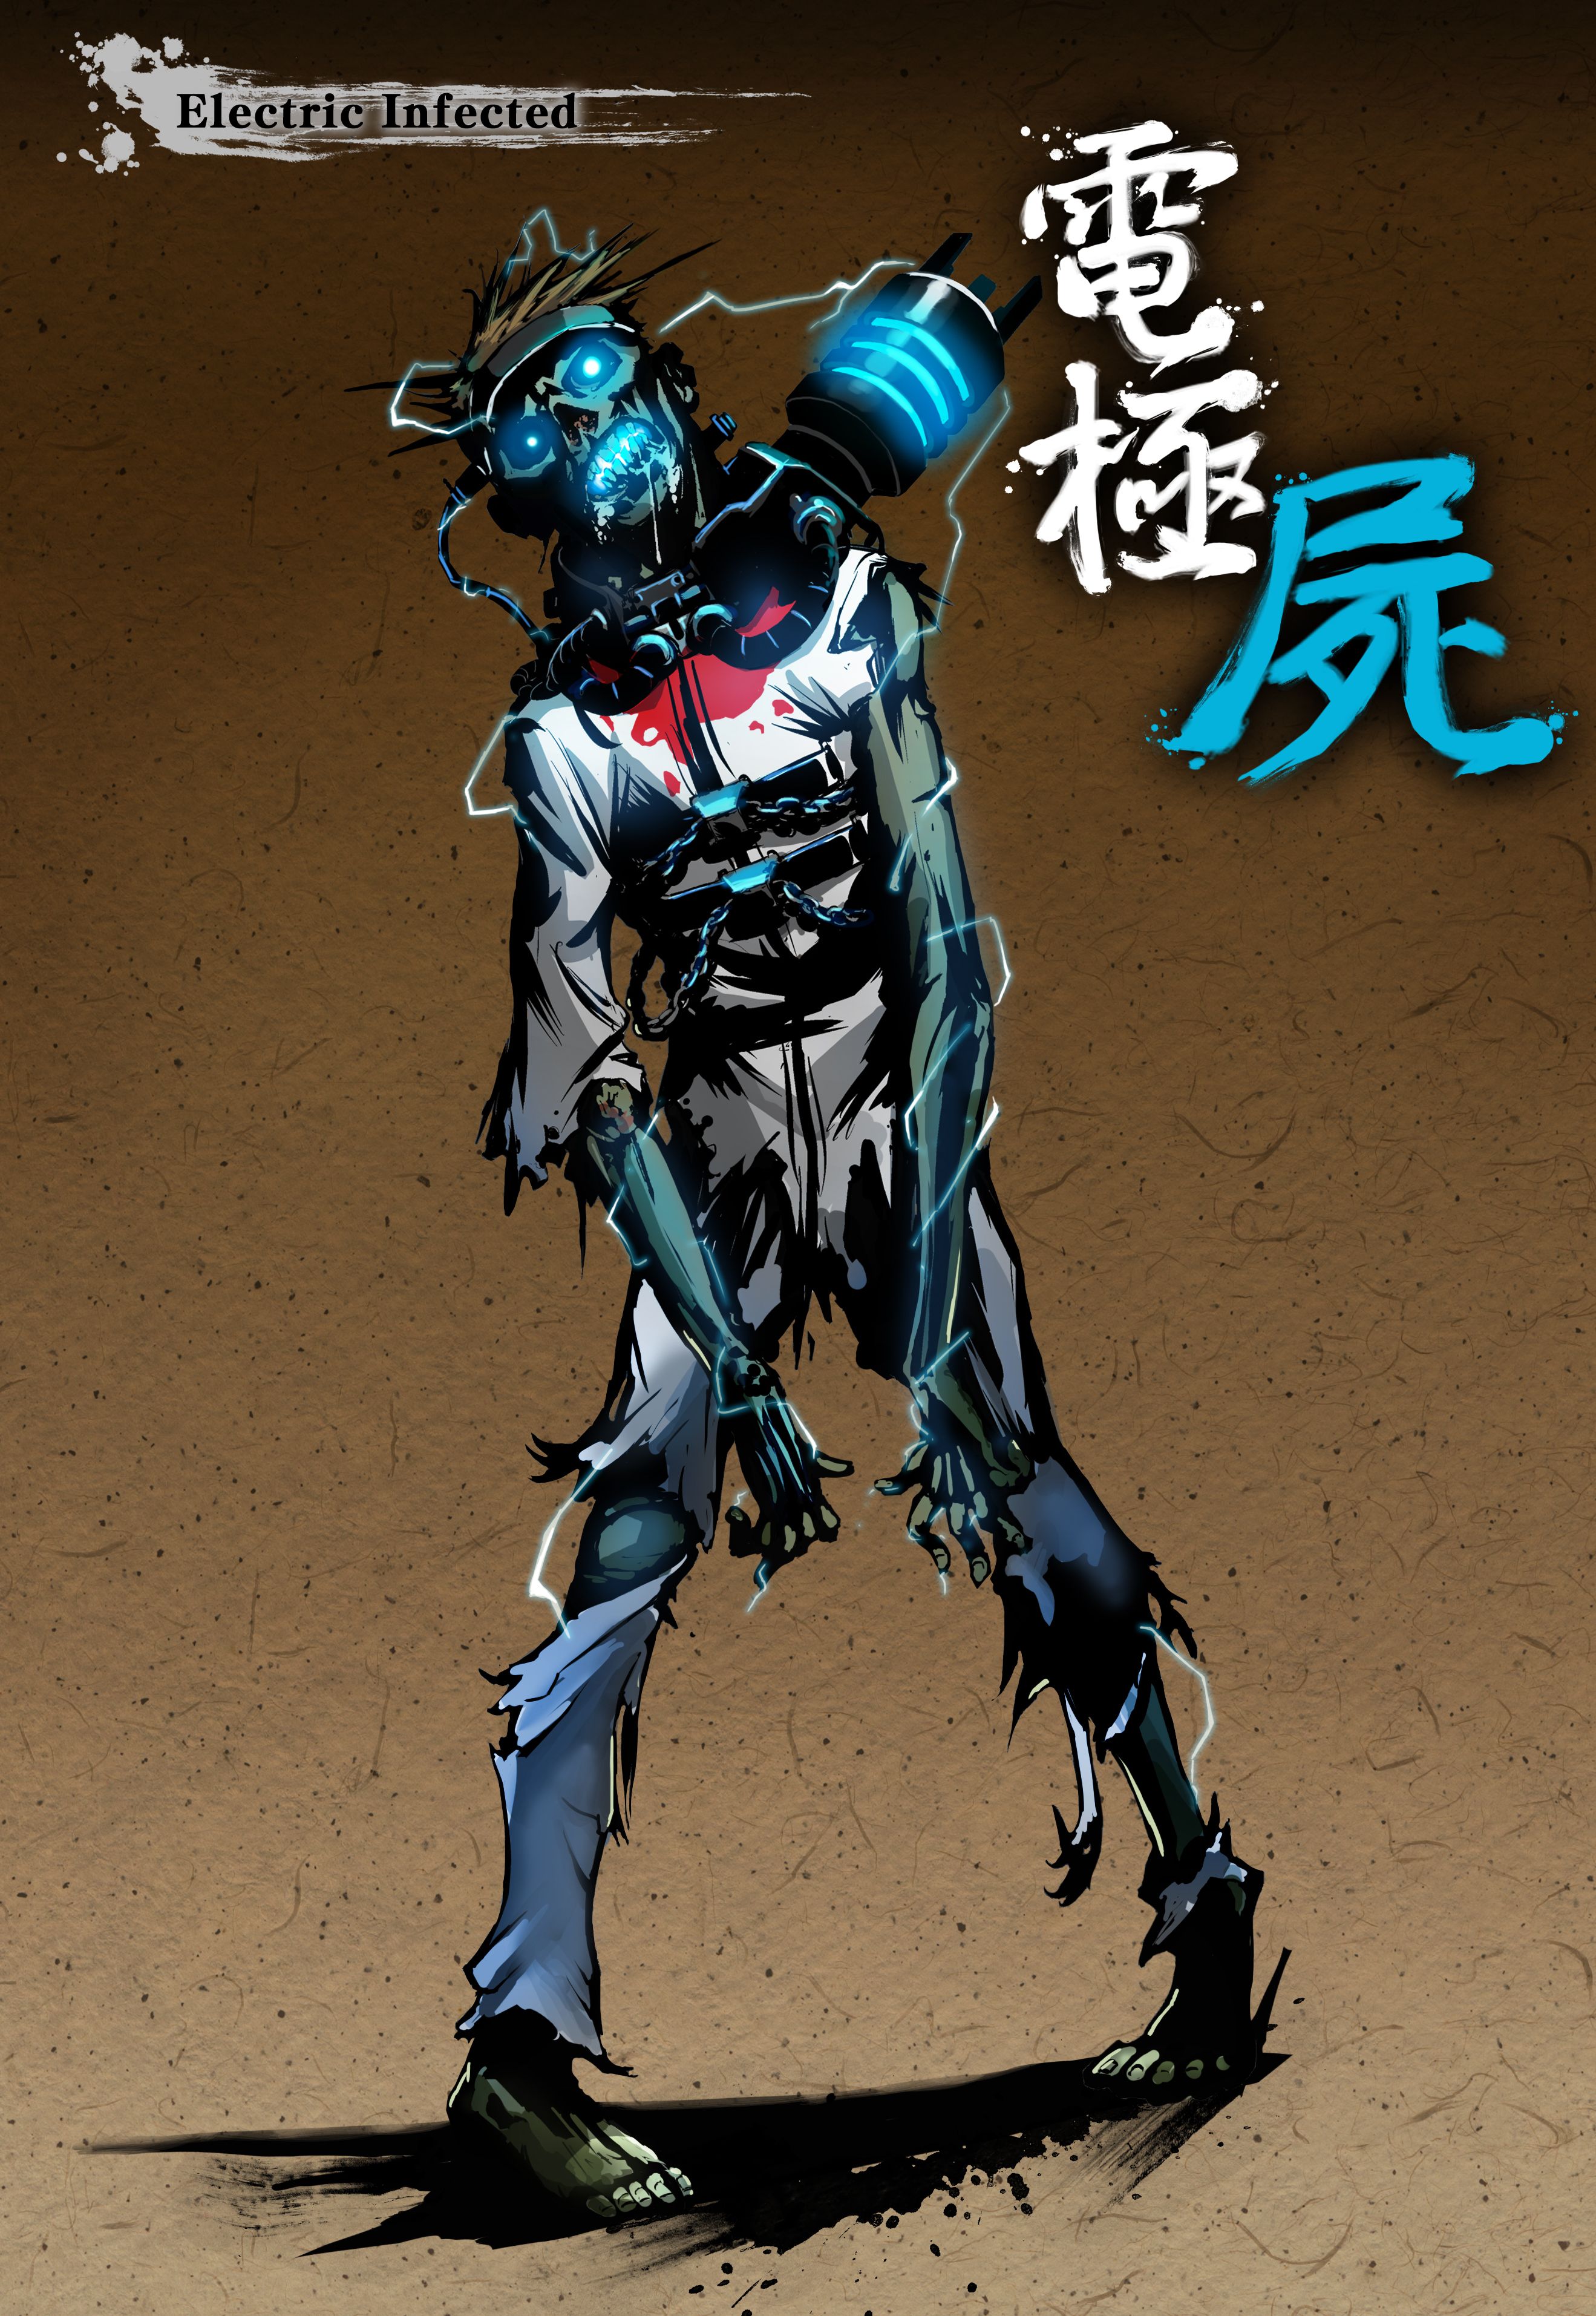 Yaiba Ninja Gaiden Z - ZombieStill_Electric Infected_130819